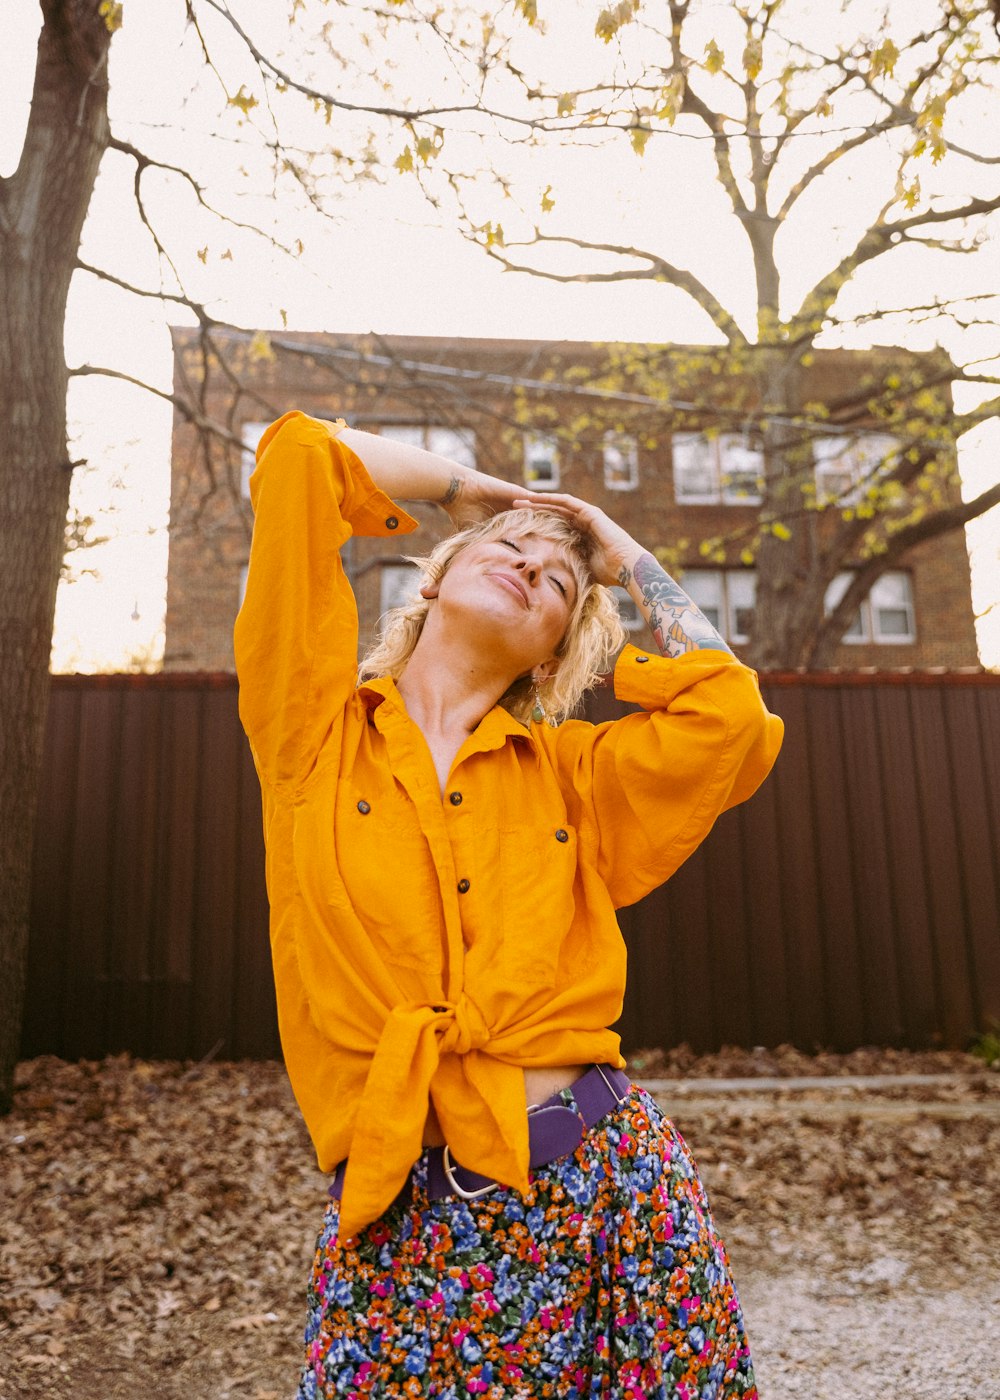 Una donna che indossa una camicia gialla e una gonna colorata foto – Stati  uniti d'america Immagine gratuita su Unsplash